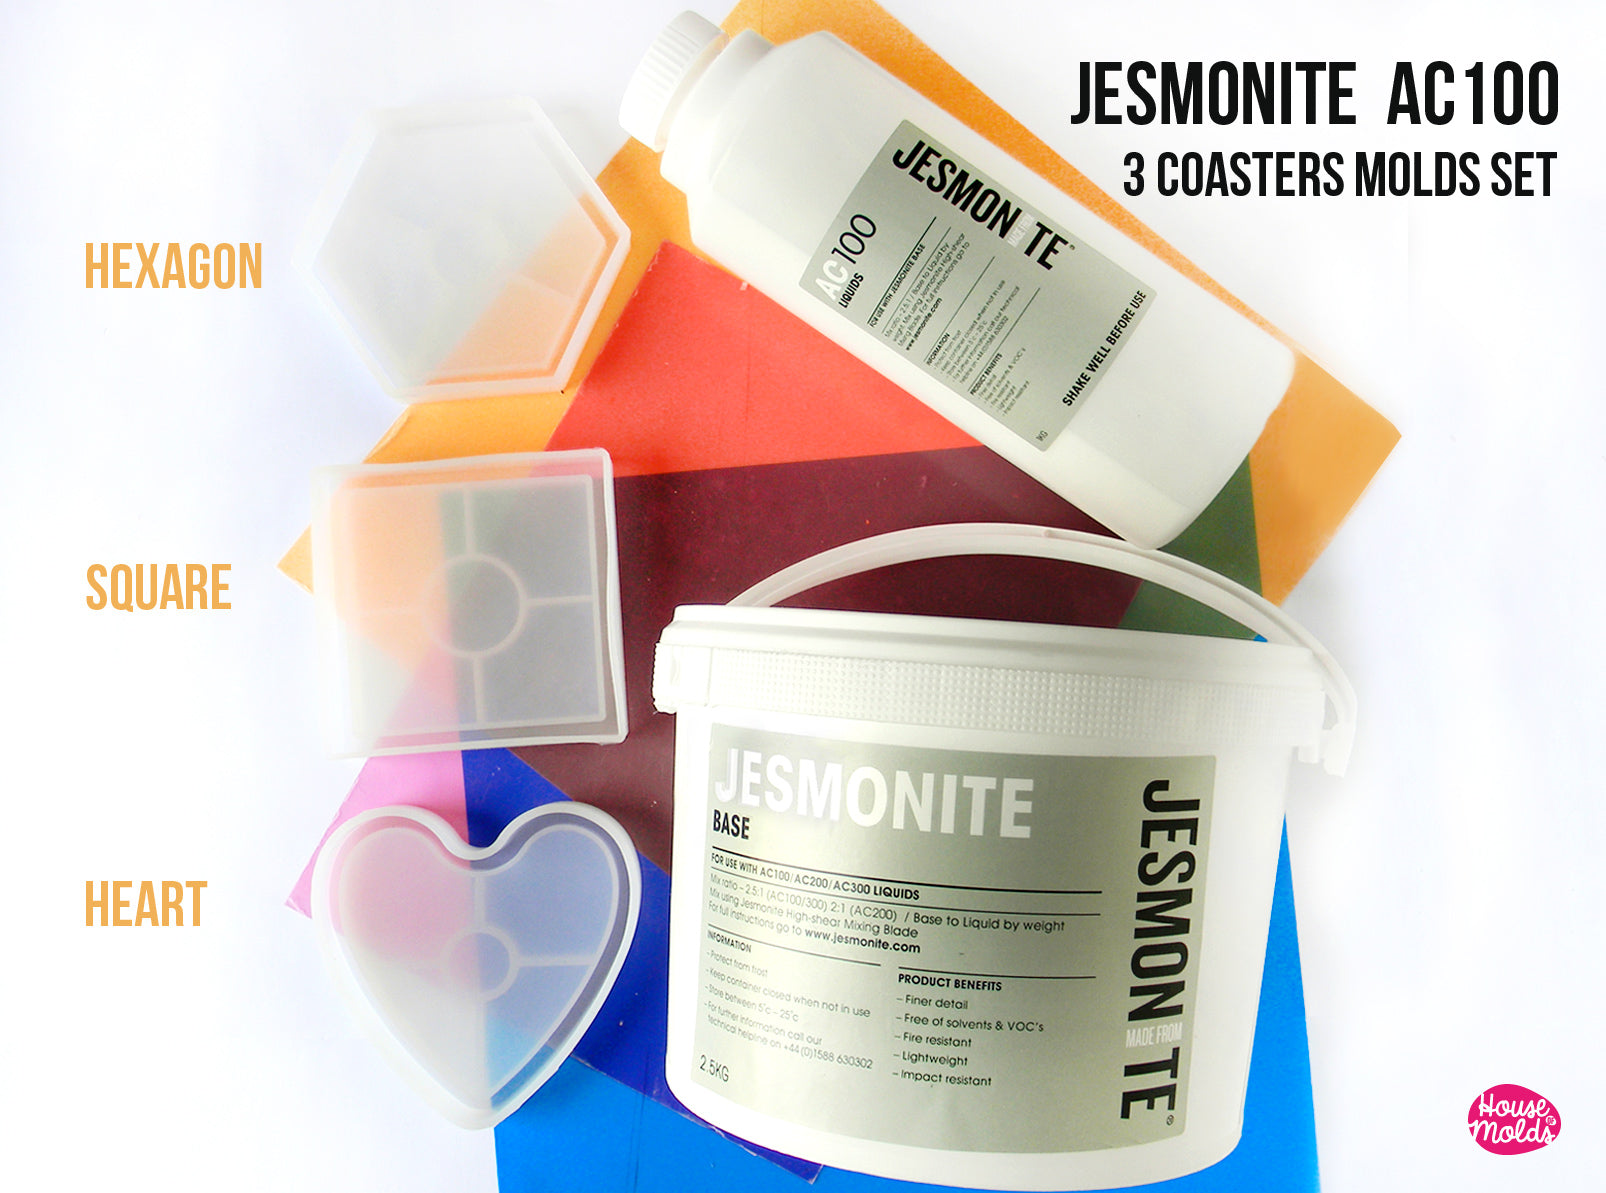 Jesmonite Triple Technique Coasters & Pot Workshop – Make Your Own